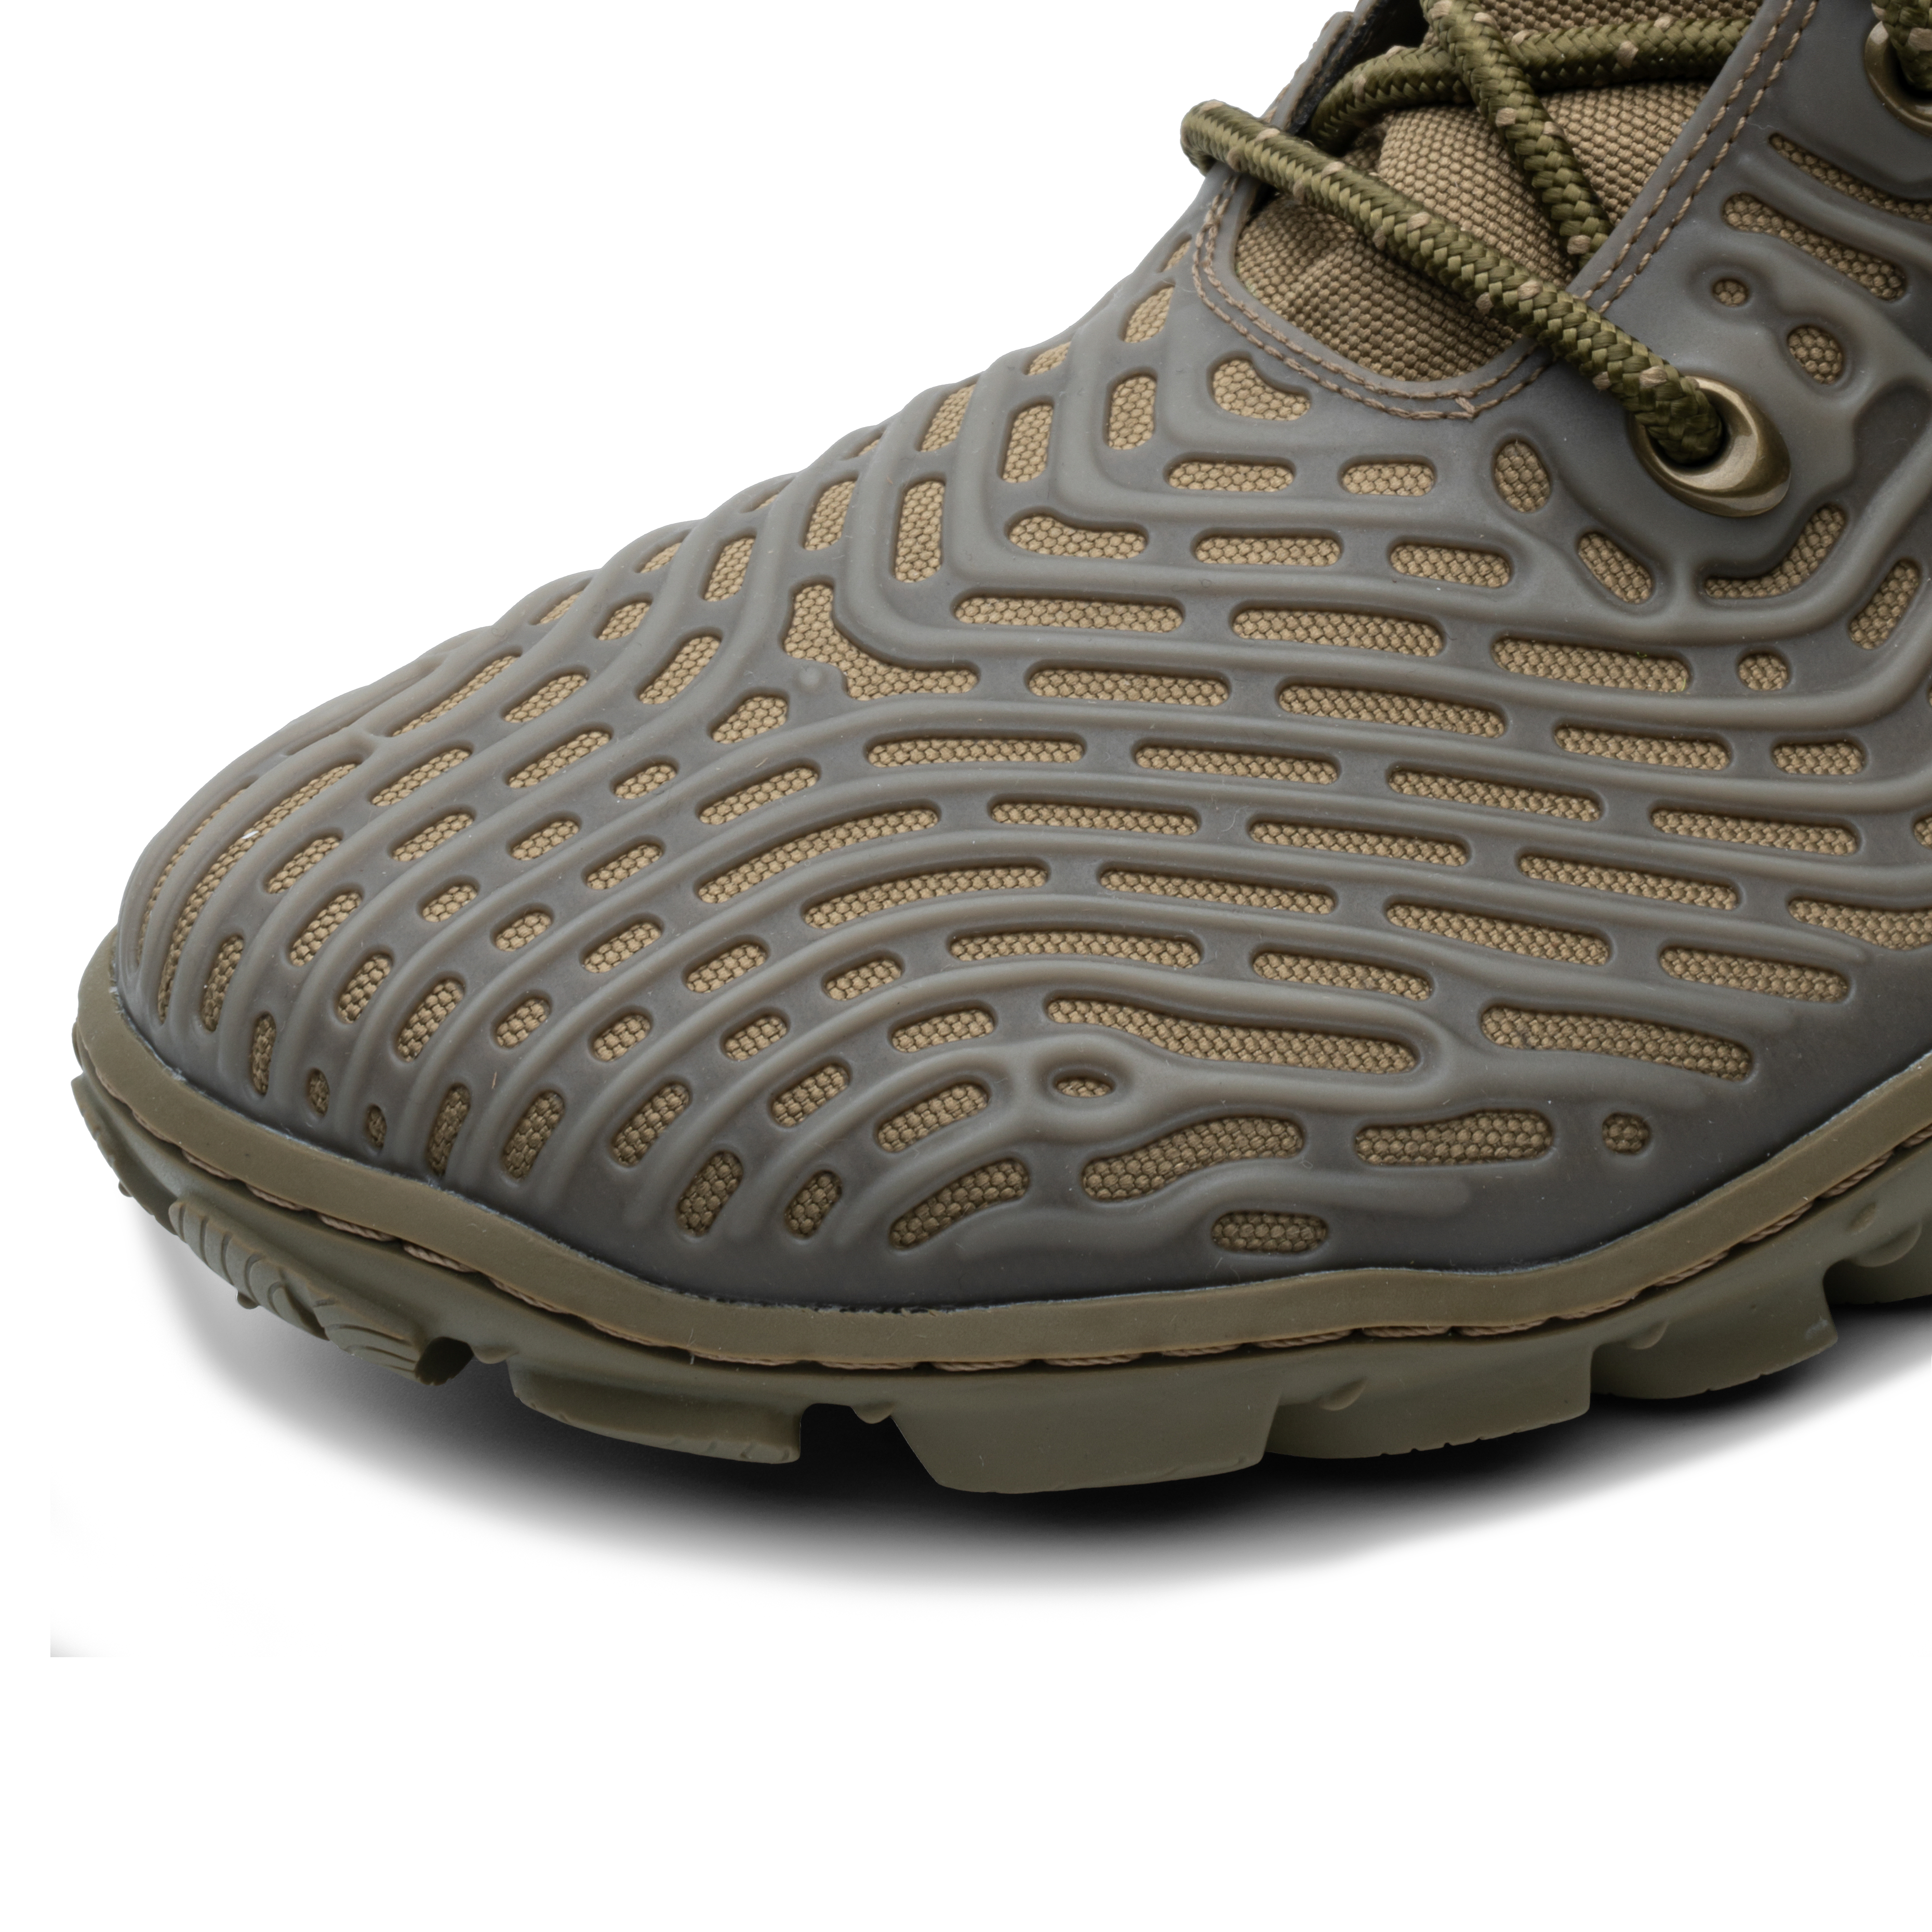 Nærbillede af Vivobarefoot Jungle ESC Mens sko i 'Invisible' varianten, designet som barfodssko med en jordnær grå farve og tekstureret mønster.